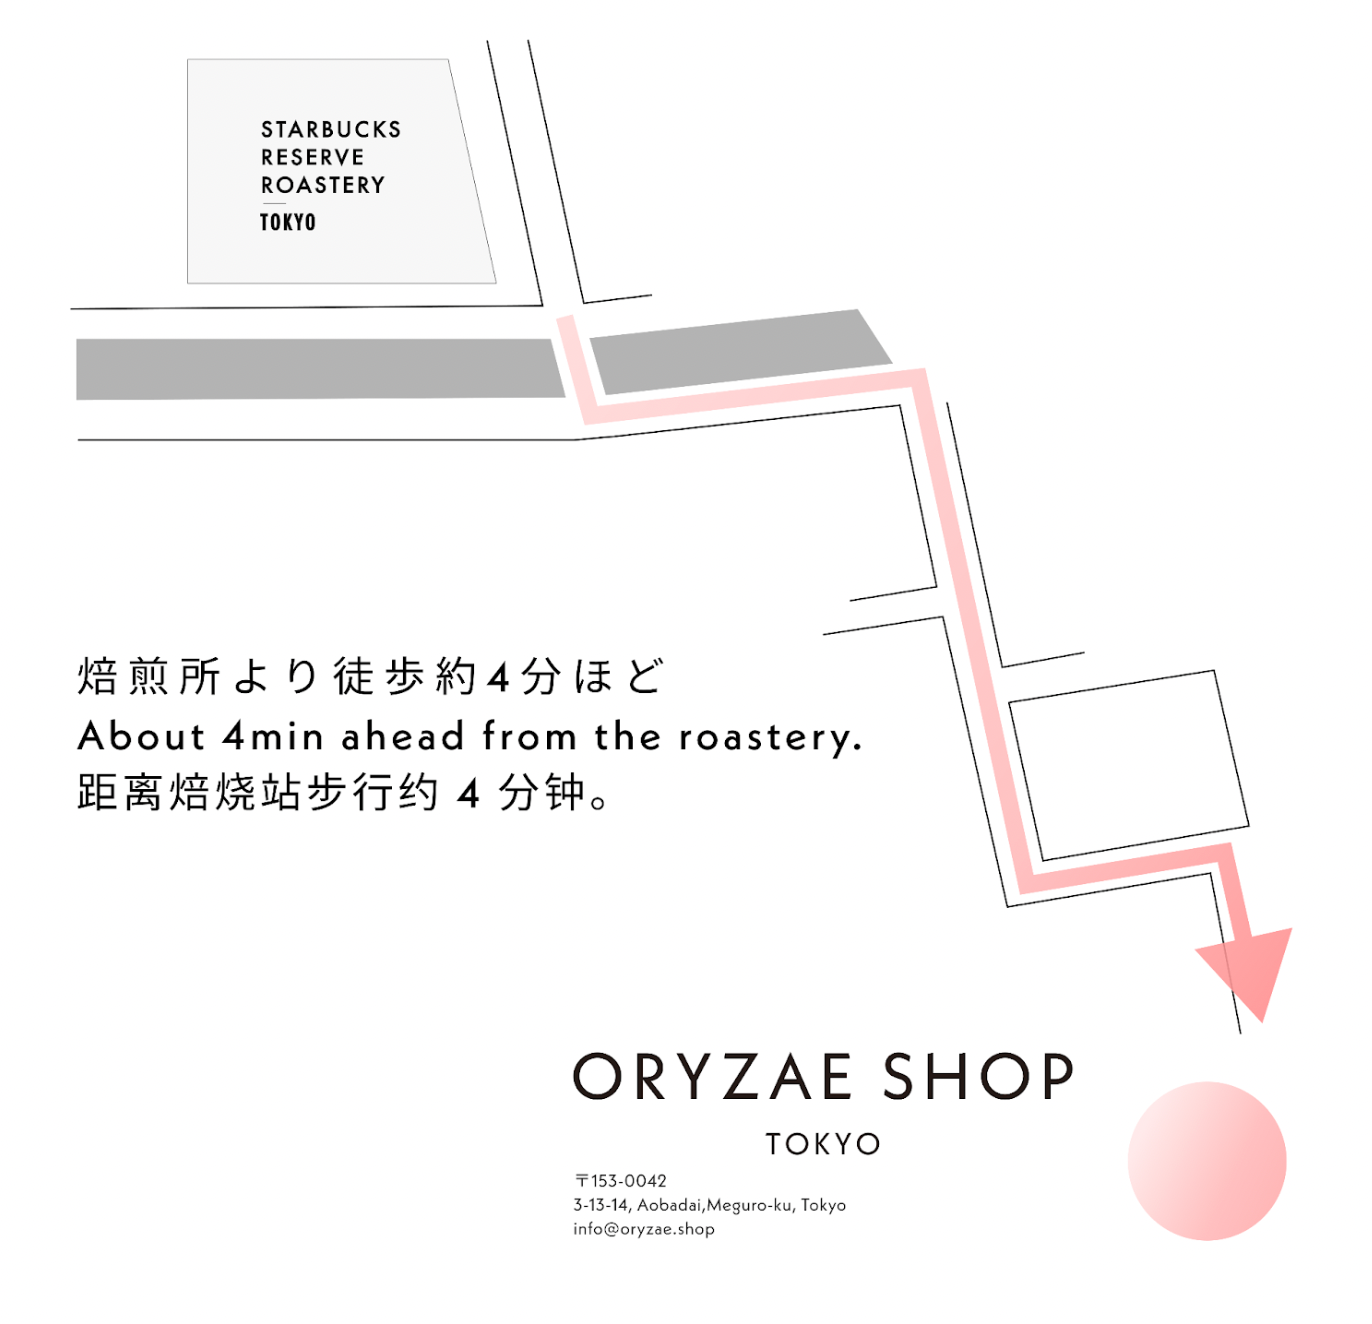 発酵食品D2Cオリゼの新たな拠点「ORYZAE SHOP」が目黒区青葉台にオープン。9月1日から限定販売開始